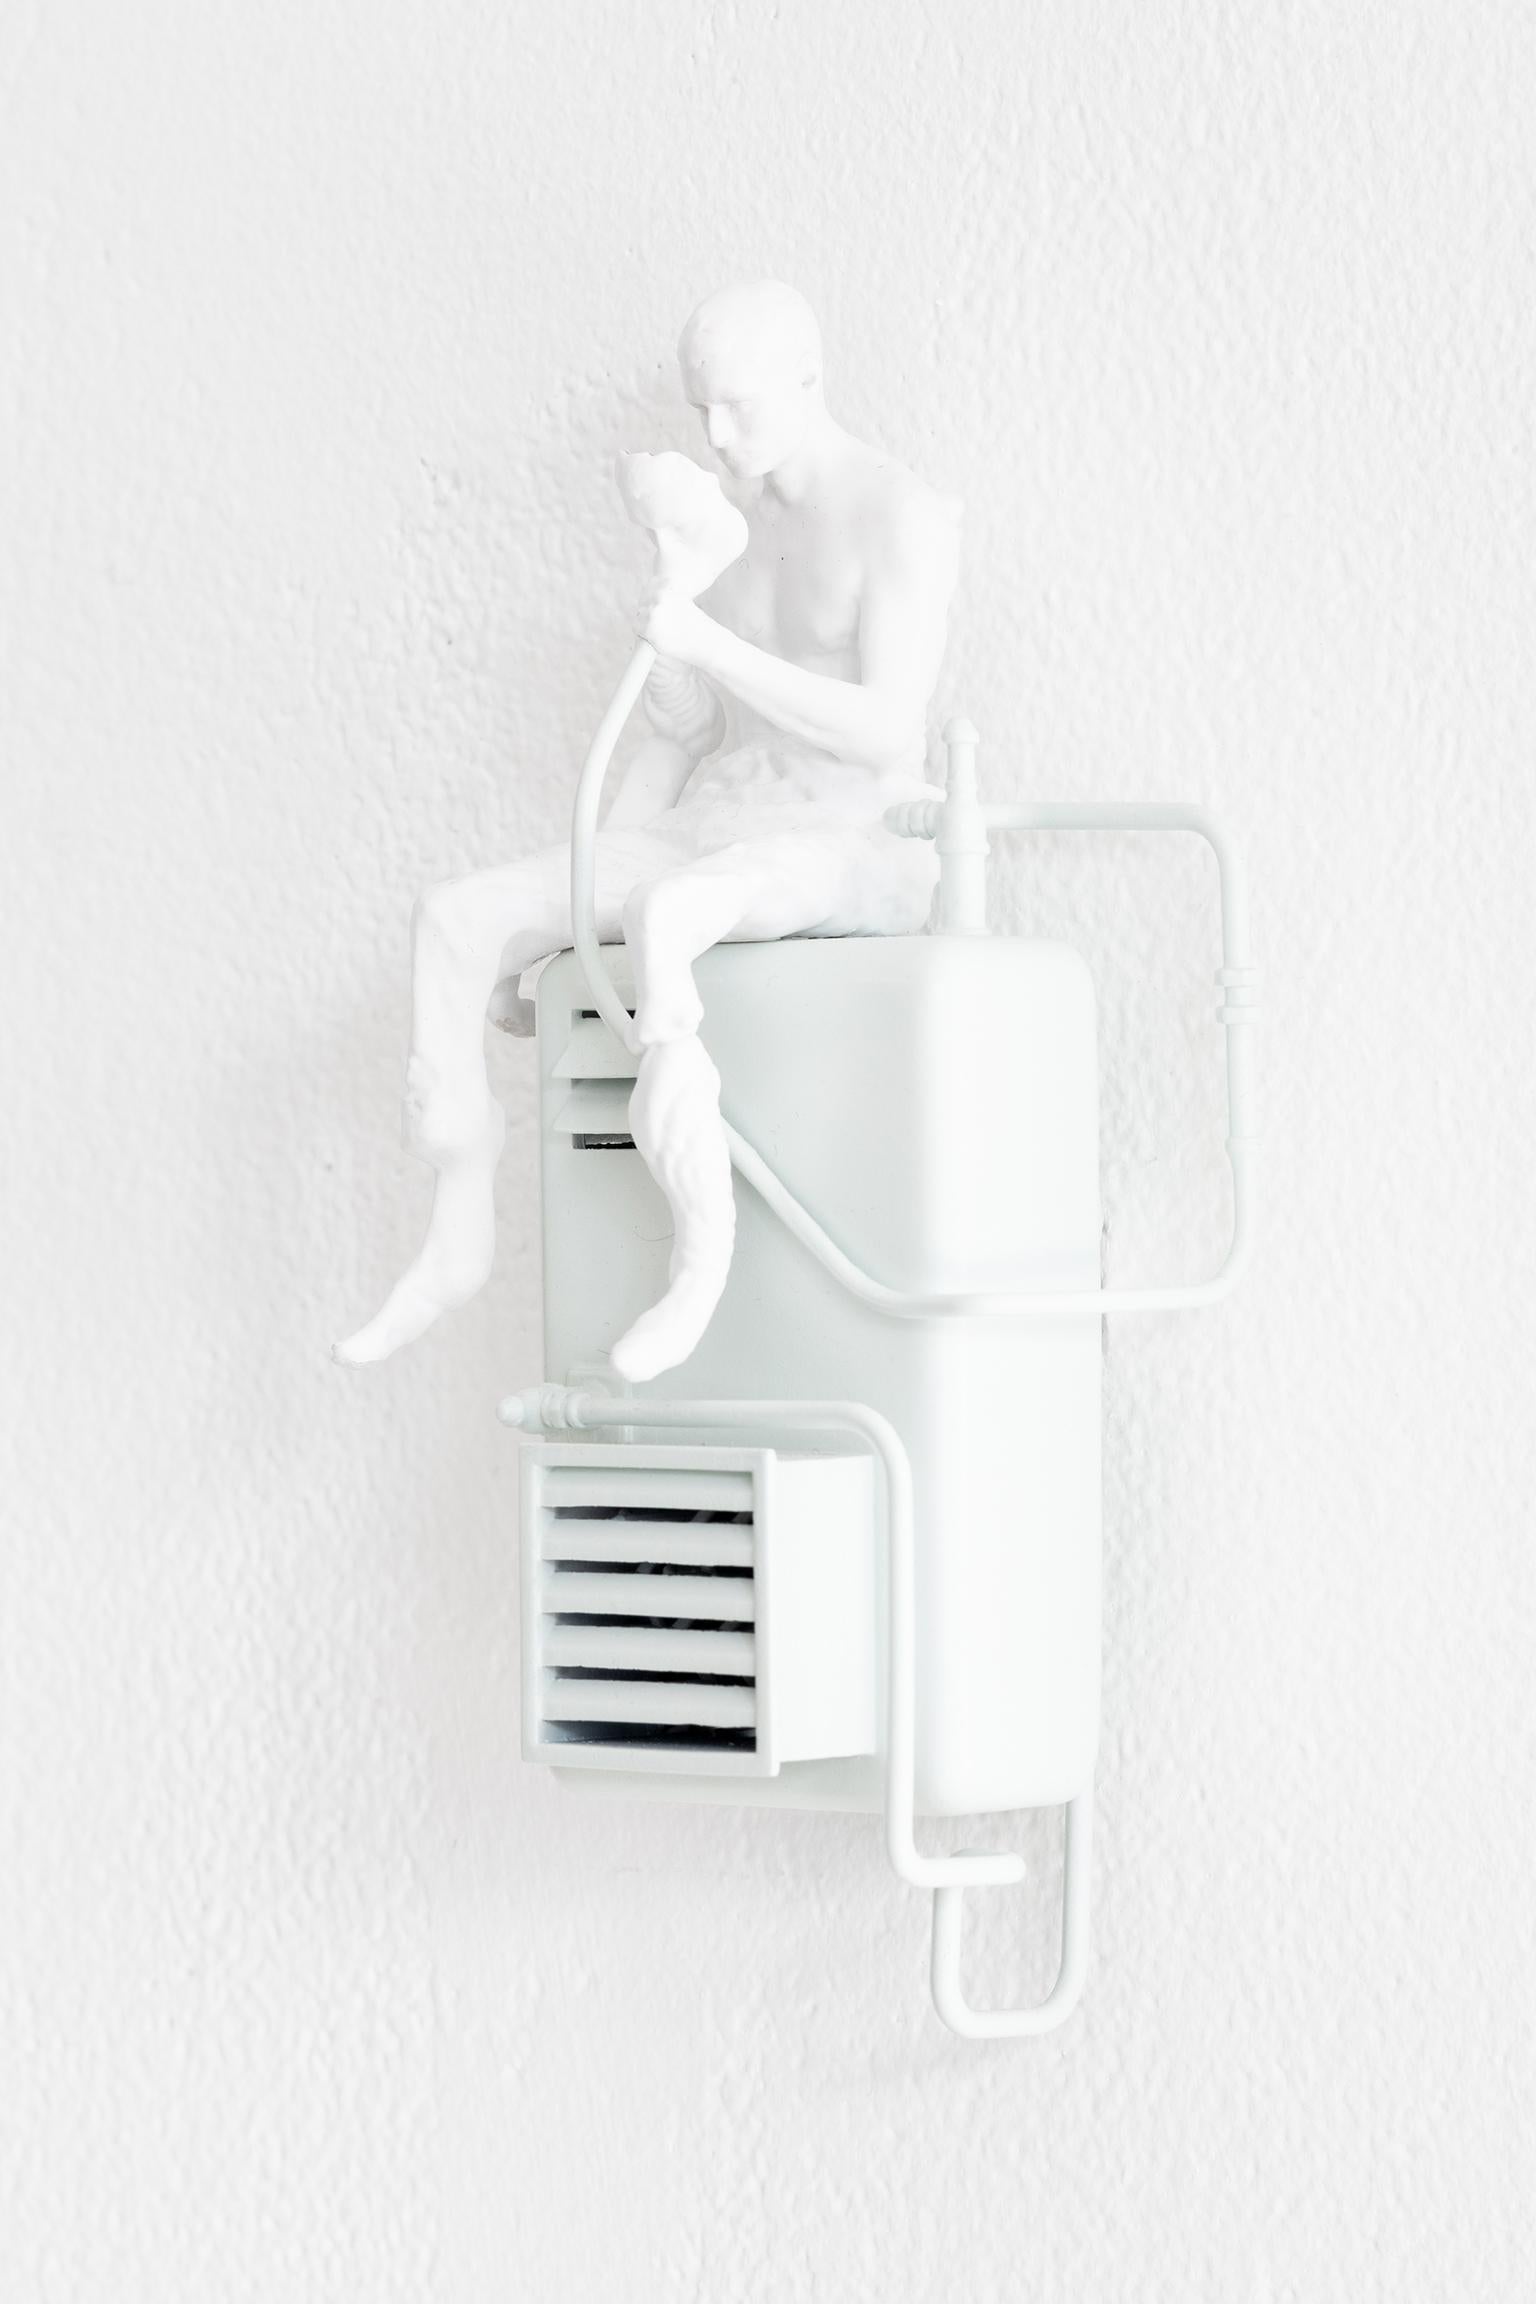 Guillaume Lachapelle verbindet in seinem Werk das Reale mit dem Imaginären, um Miniaturumgebungen und -szenarien zu schaffen, die die Verbindungen zwischen dem Menschen und seiner Alltagswelt aufzeigen. In Extrapolations extrahiert Lachapelle